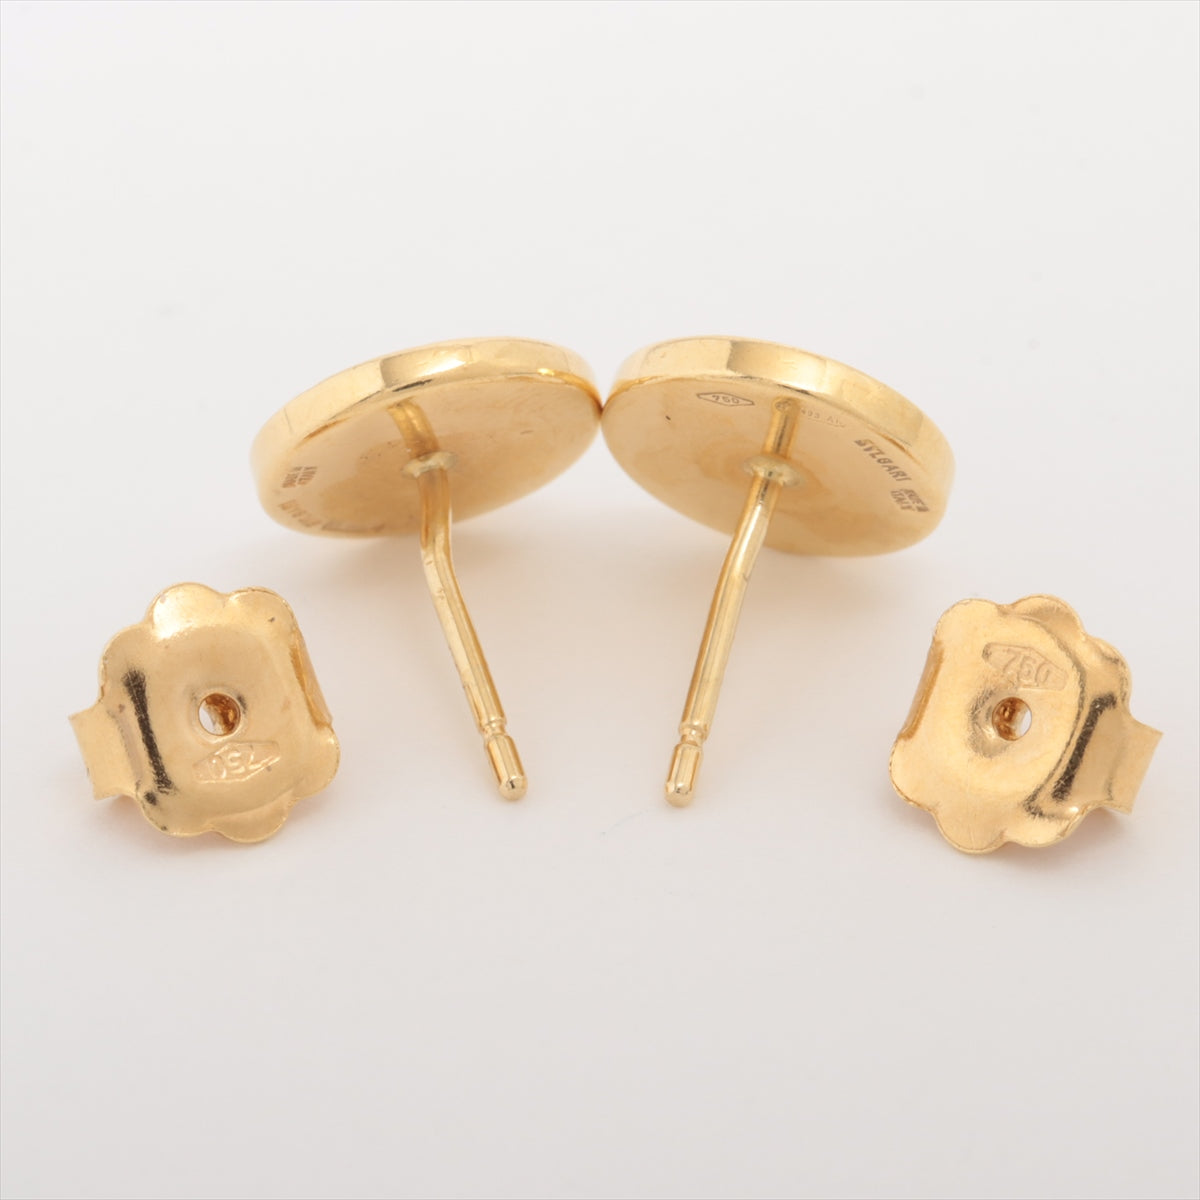 Bvlgari Bvlgari Bvlgari Onyx Piercing jewelry 750(YG) 3.2g